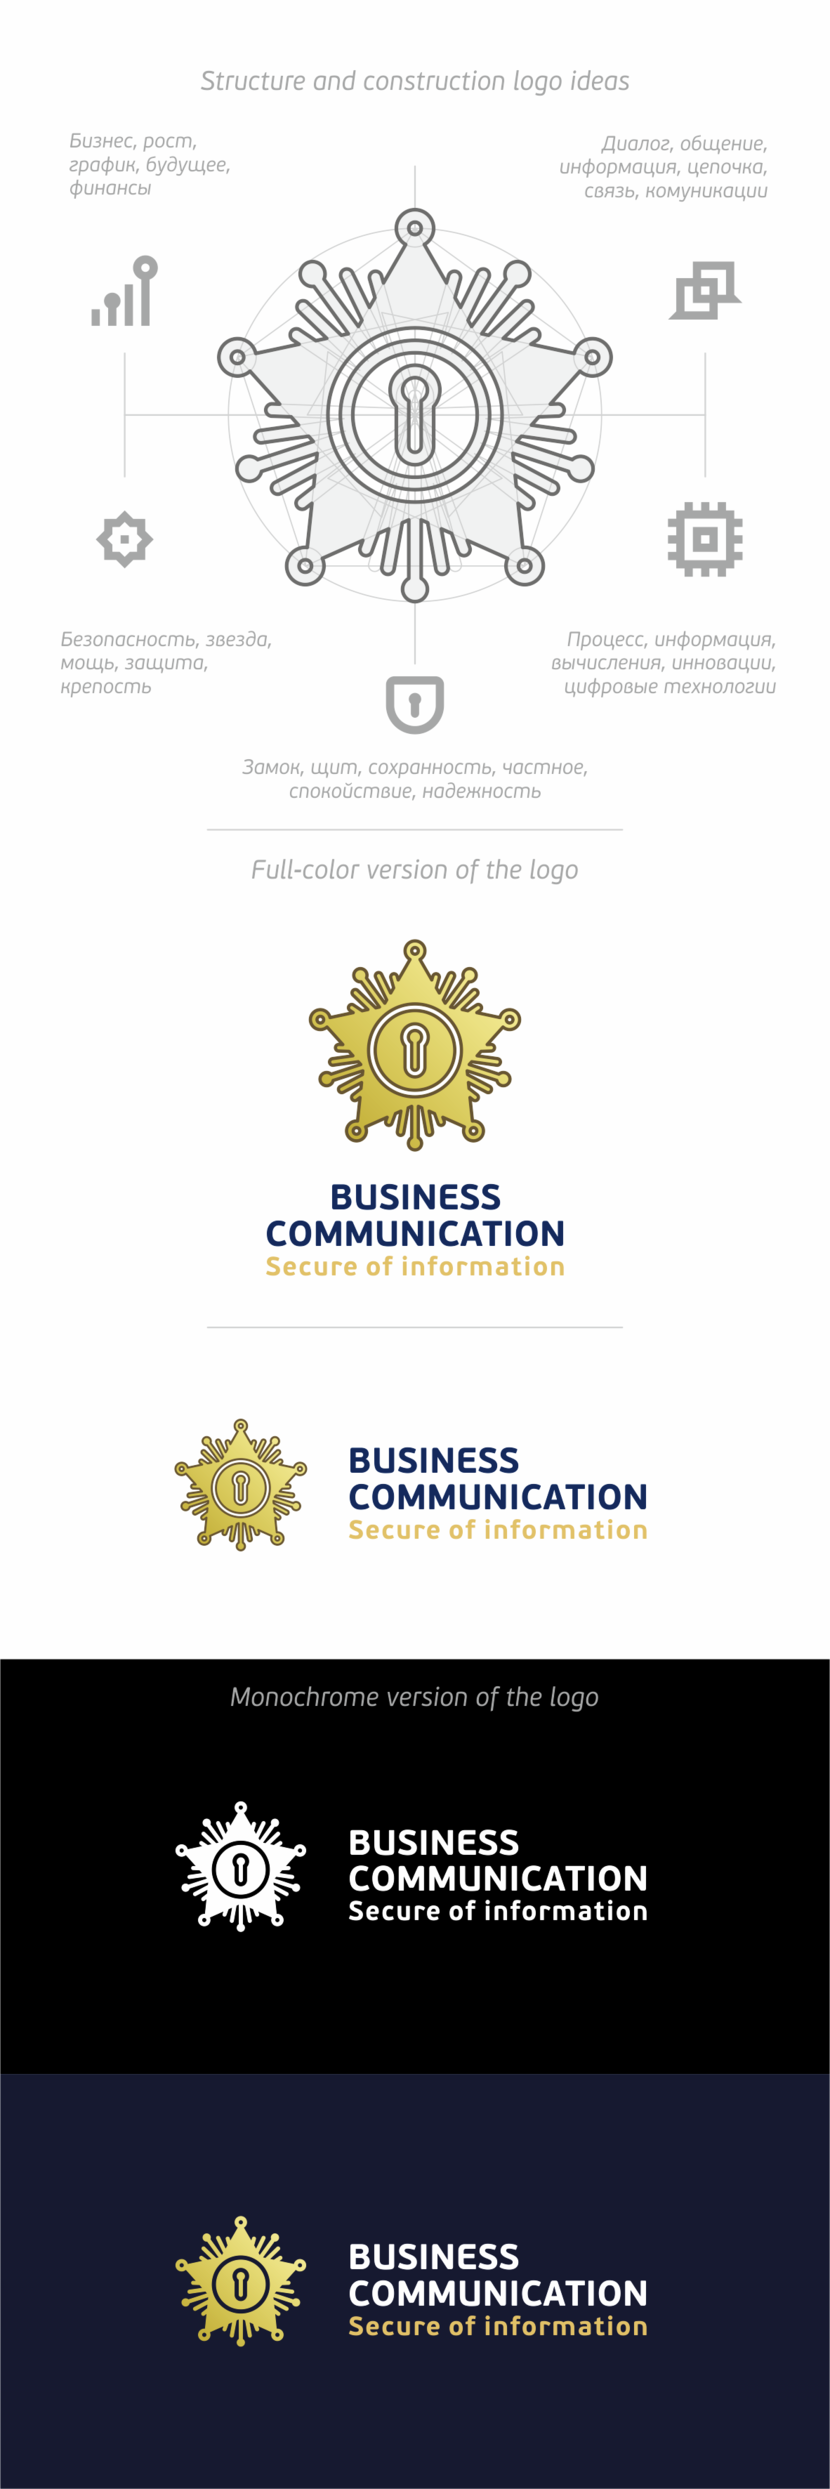 + всегда можно заменитиь как внутреннюю иконку так и внешню часть знака) - Разработать фирменный логотип Бизнес Коммуникации